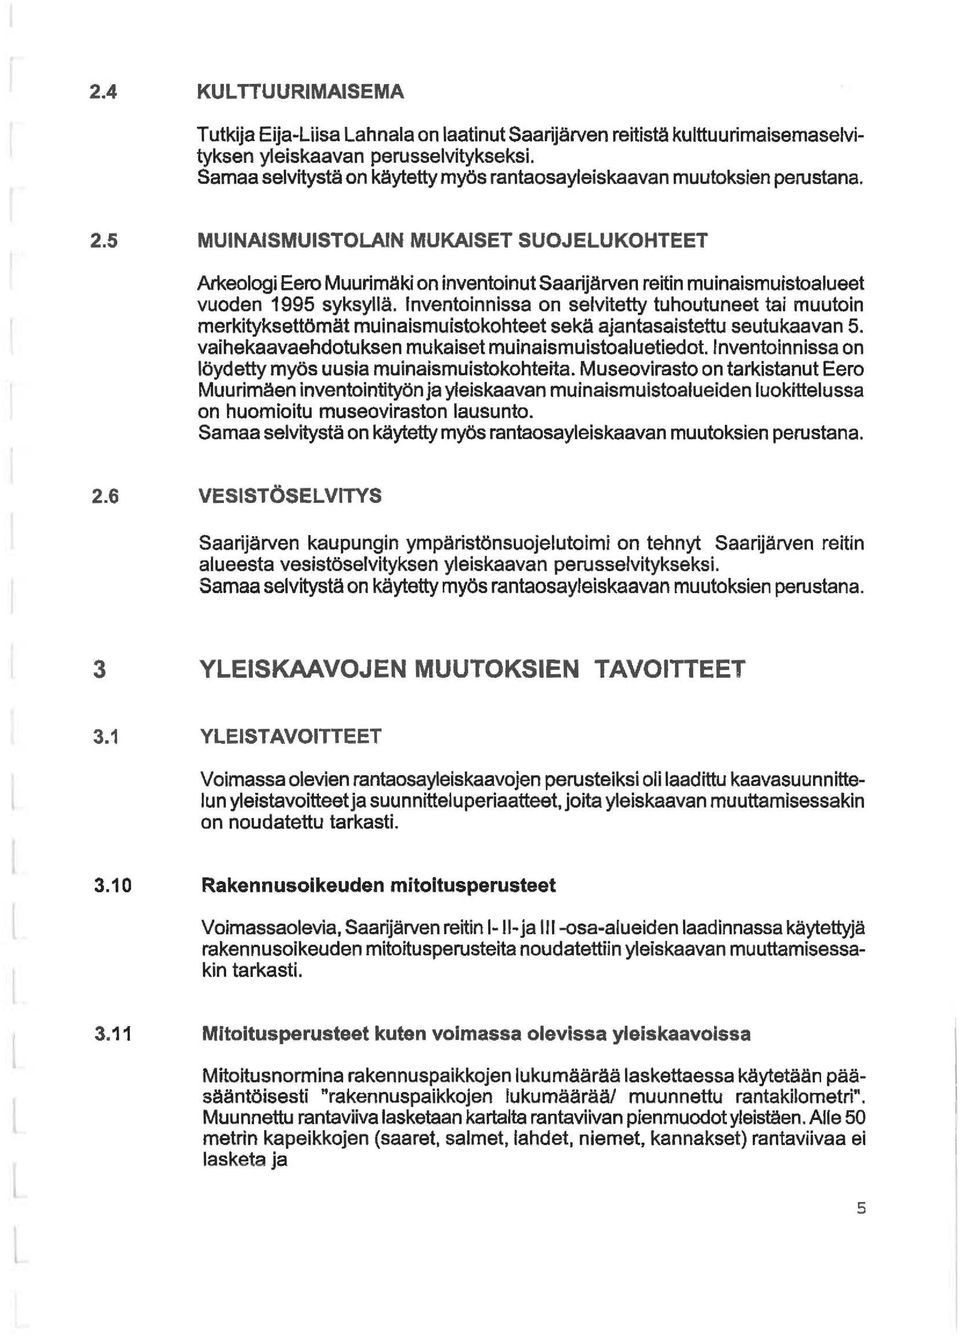 5 MUINAISMUISTOLAIN MUKAISET SUOJELUKOHTEET Arkeoogi Eero Muurimäki on inventoinut Saarijärven reitin muinaismuistoaueet vuoden 1995 syksyä.